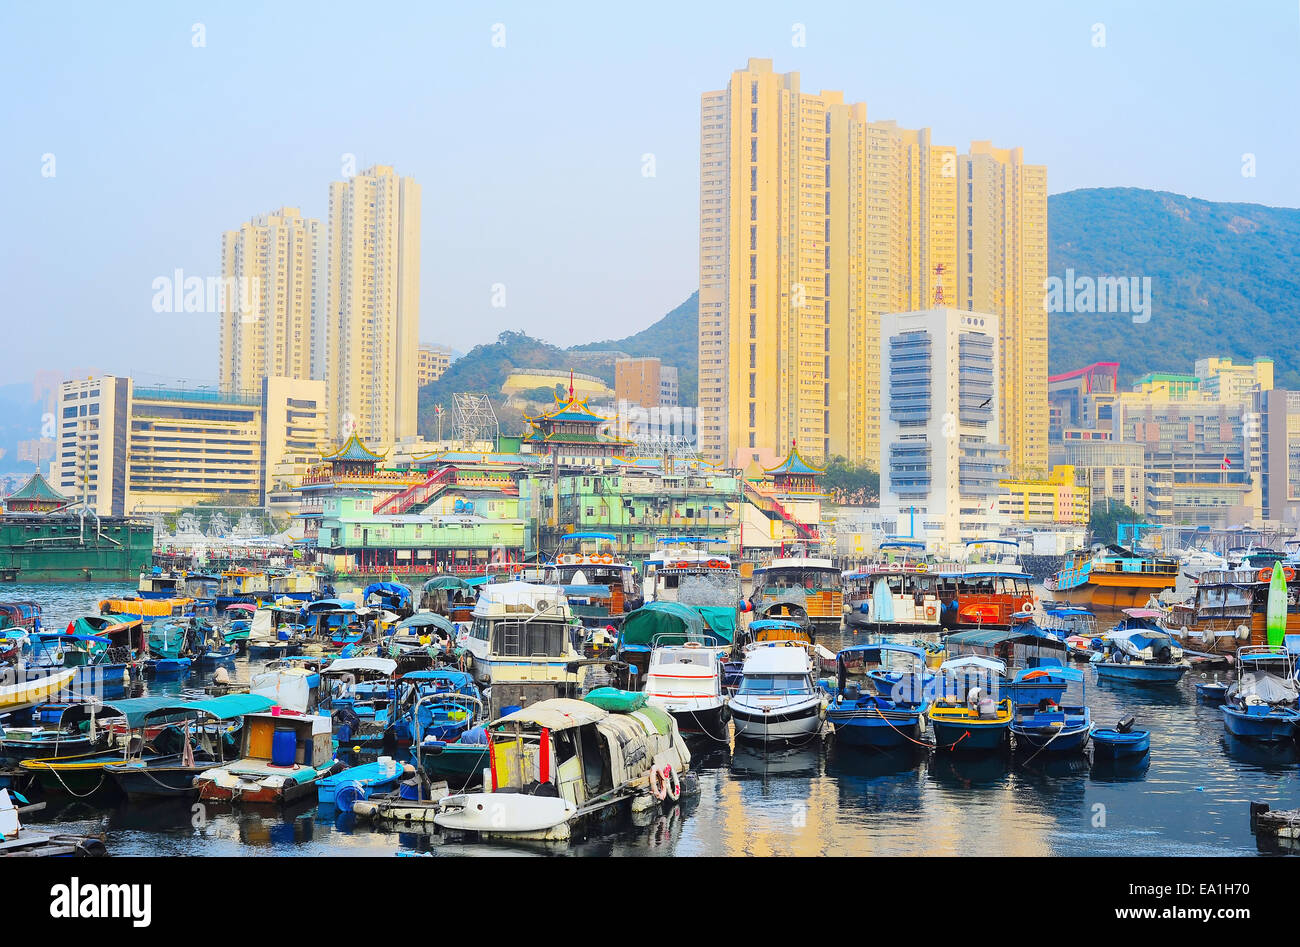 District Aberdeen in Hong Kong Stock Photo